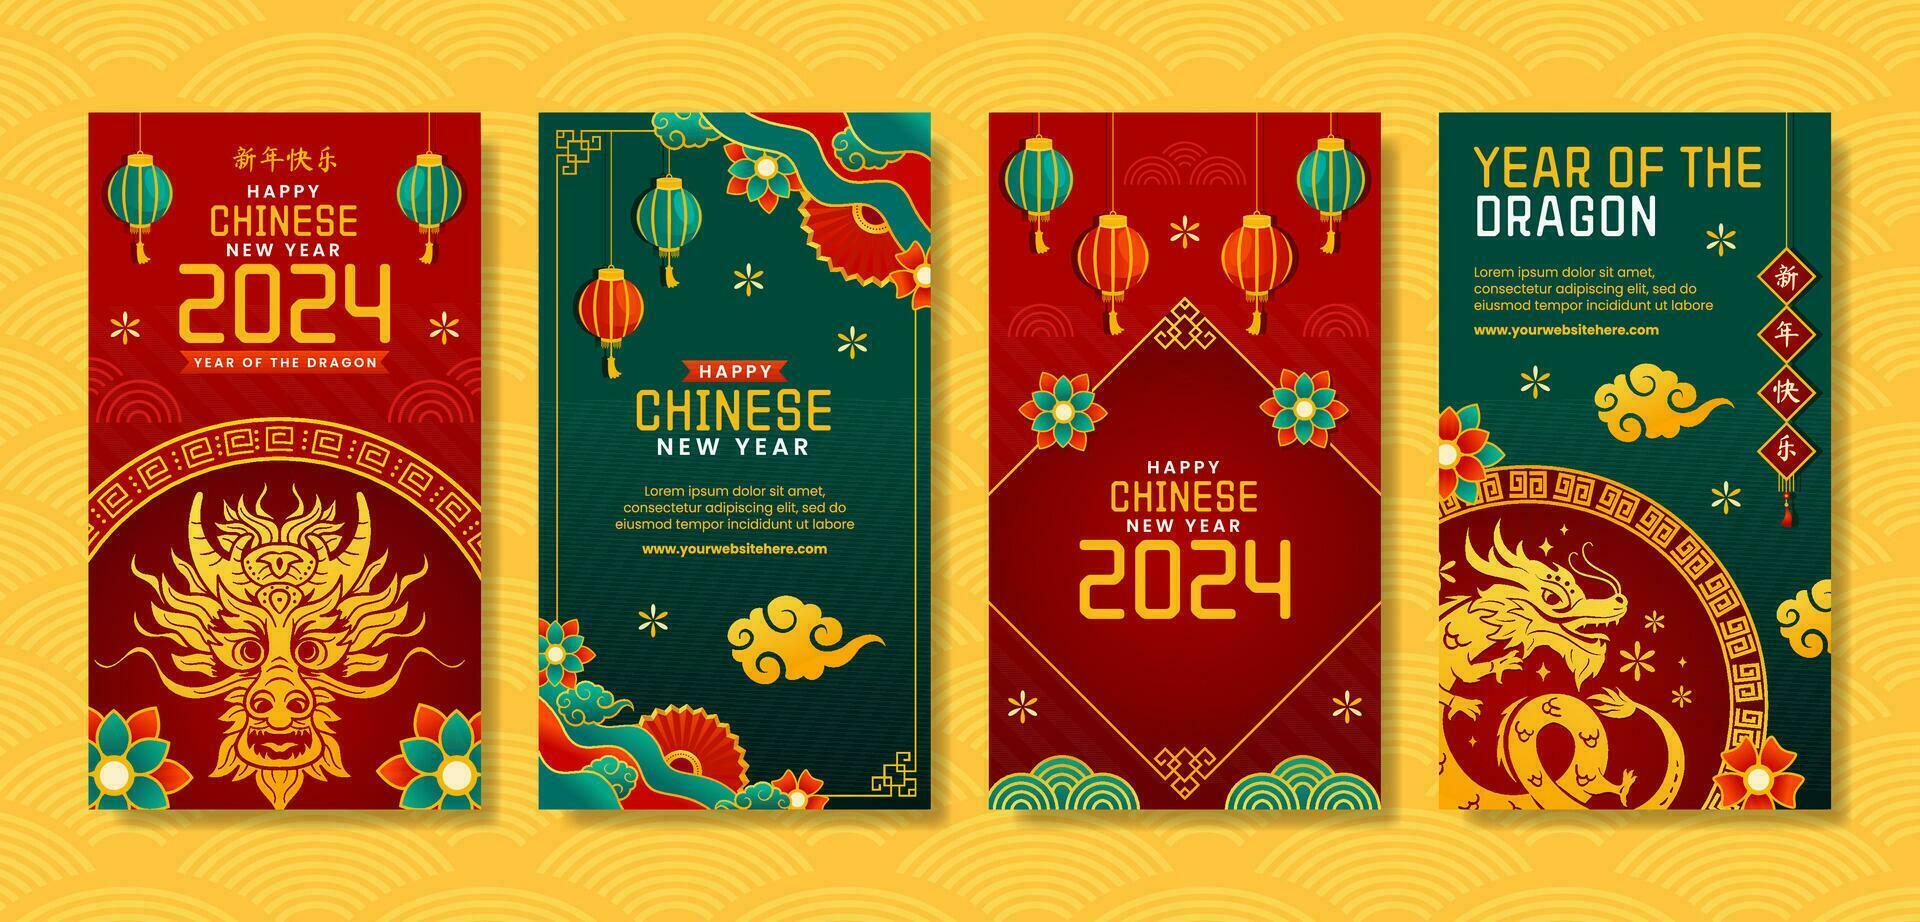 chino nuevo año 2024 social medios de comunicación cuentos ilustración plano dibujos animados mano dibujado plantillas antecedentes vector